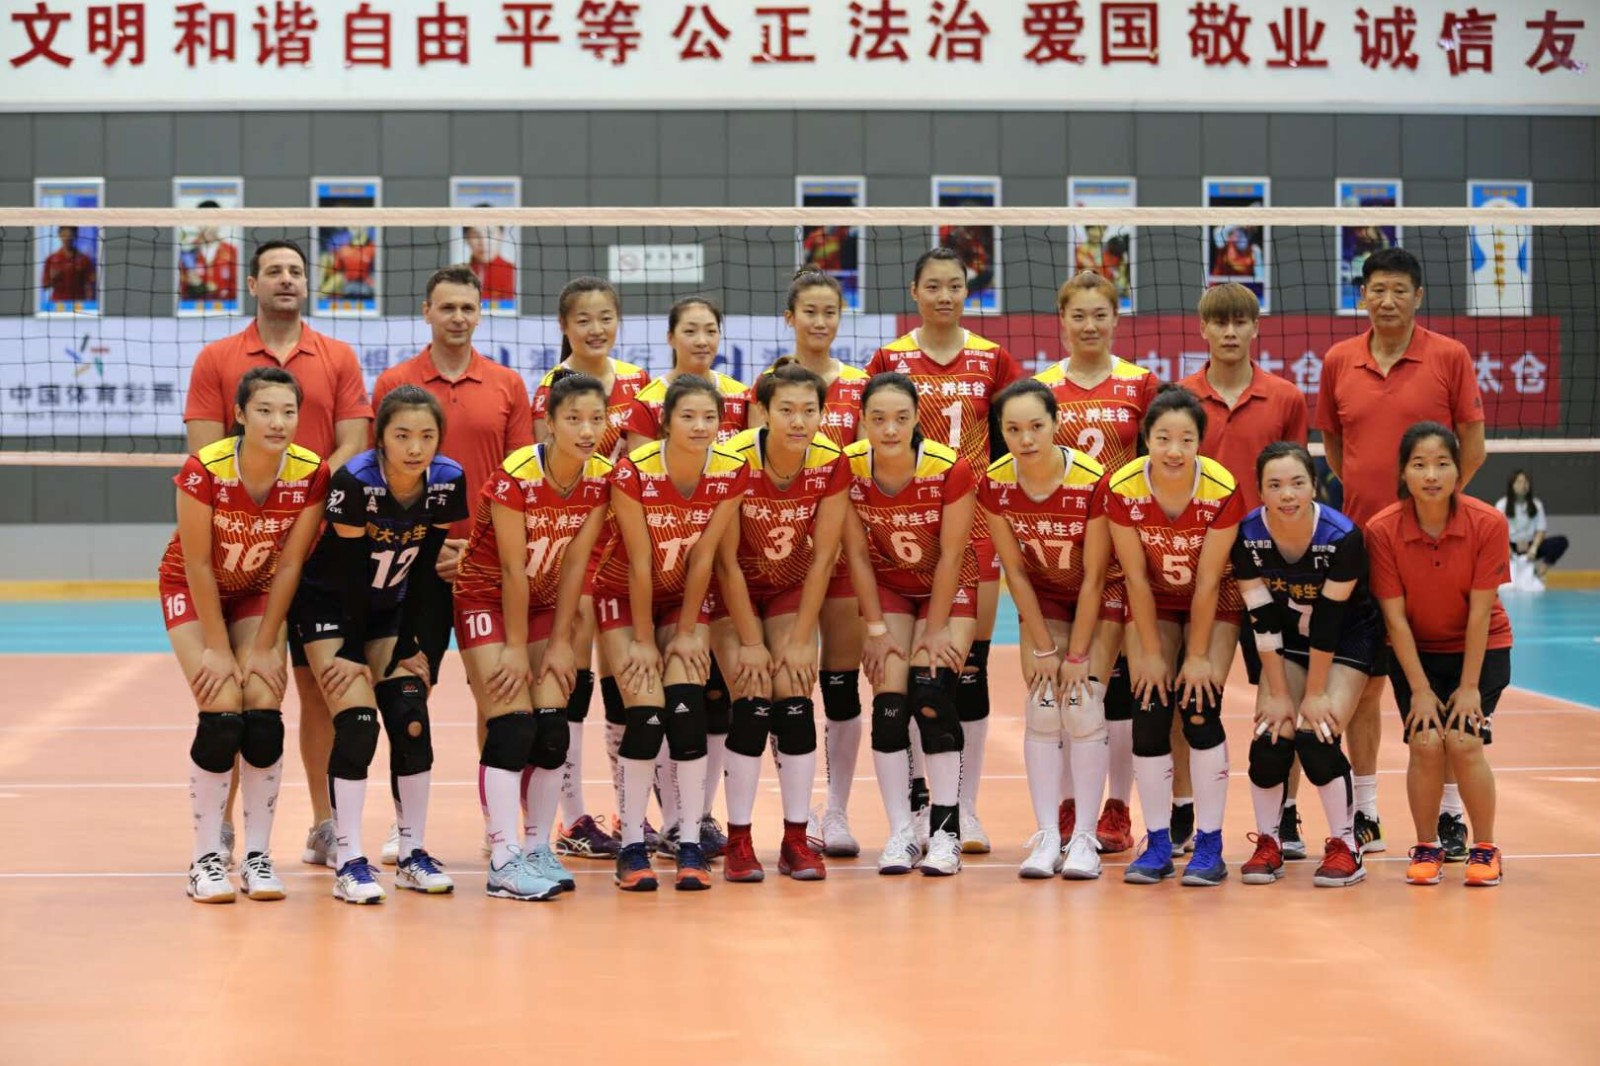 广东恒大再出发,2018全国冠军赛。